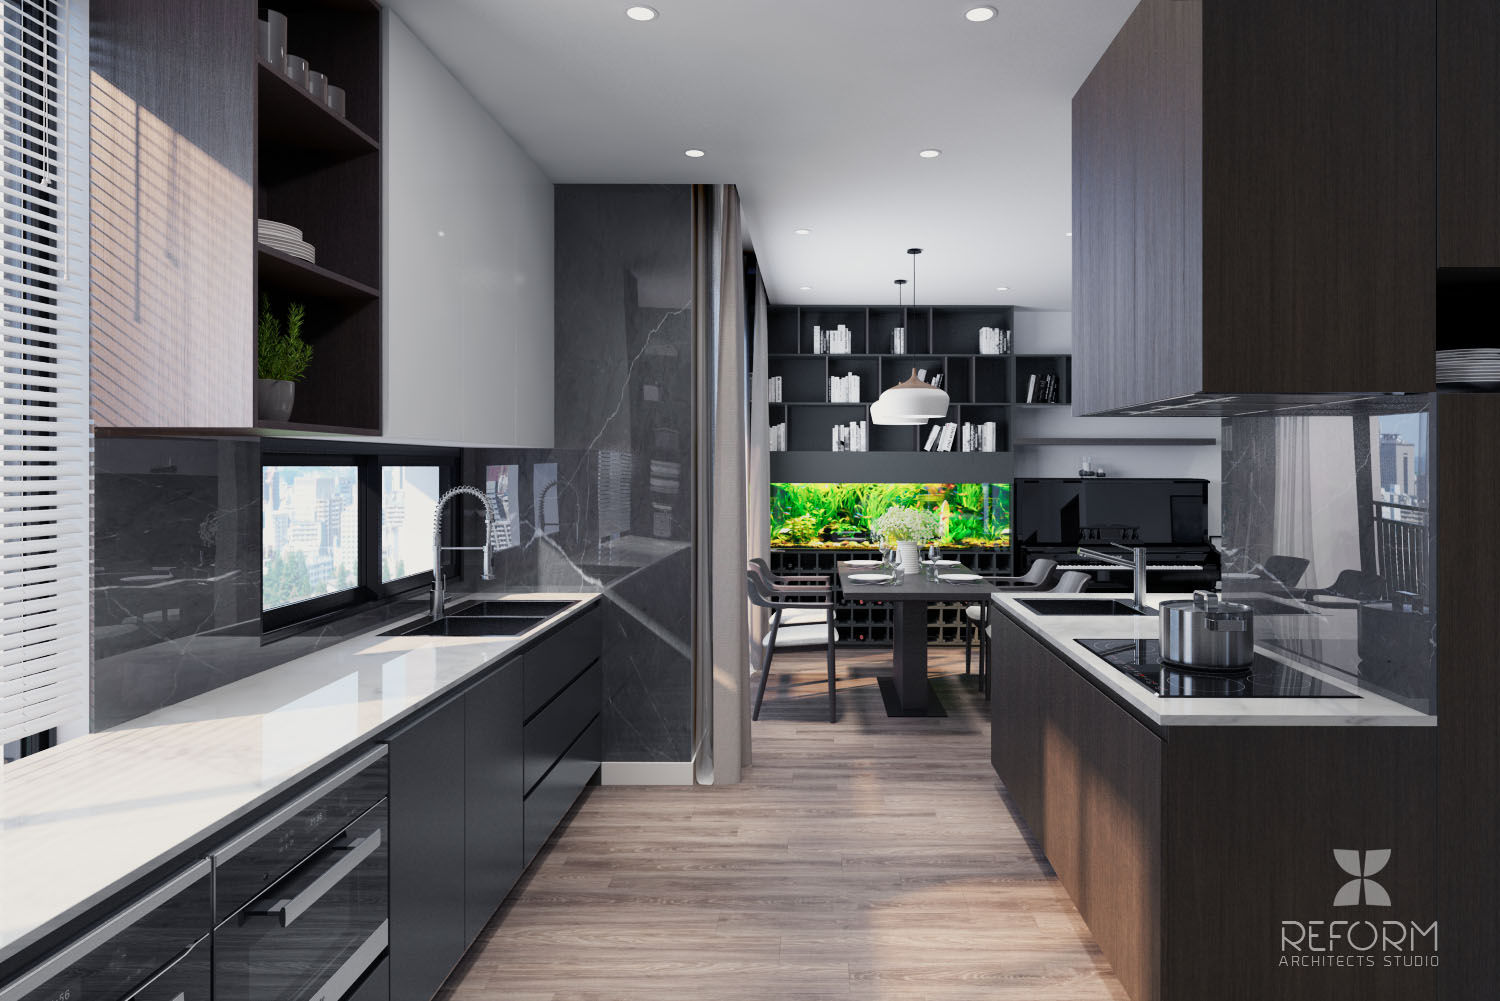 HD303 - Apartment, Reform Architects Reform Architects Módulos de cocina